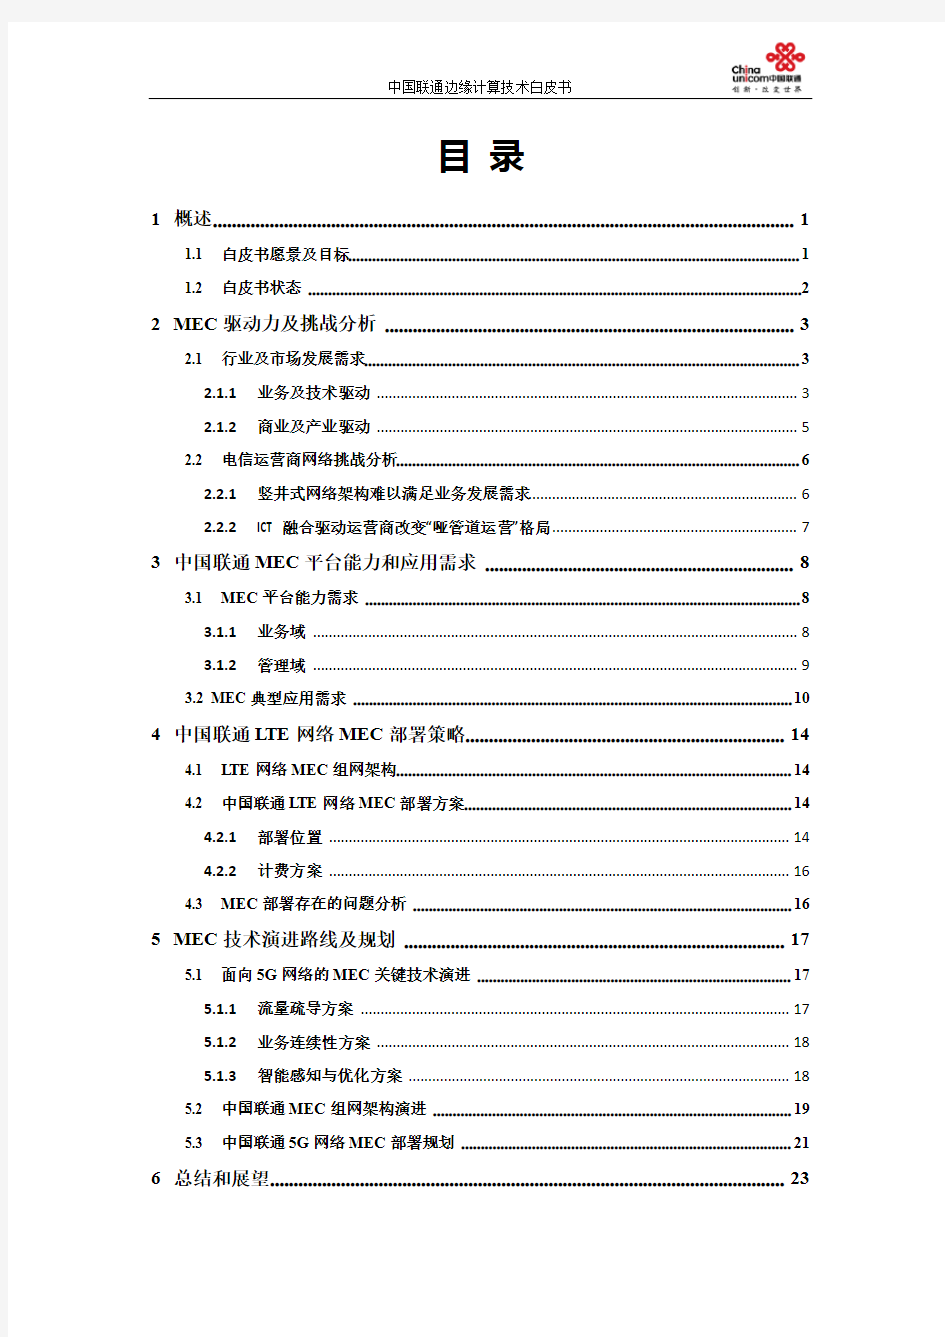 中国联通边缘计算技术白皮书